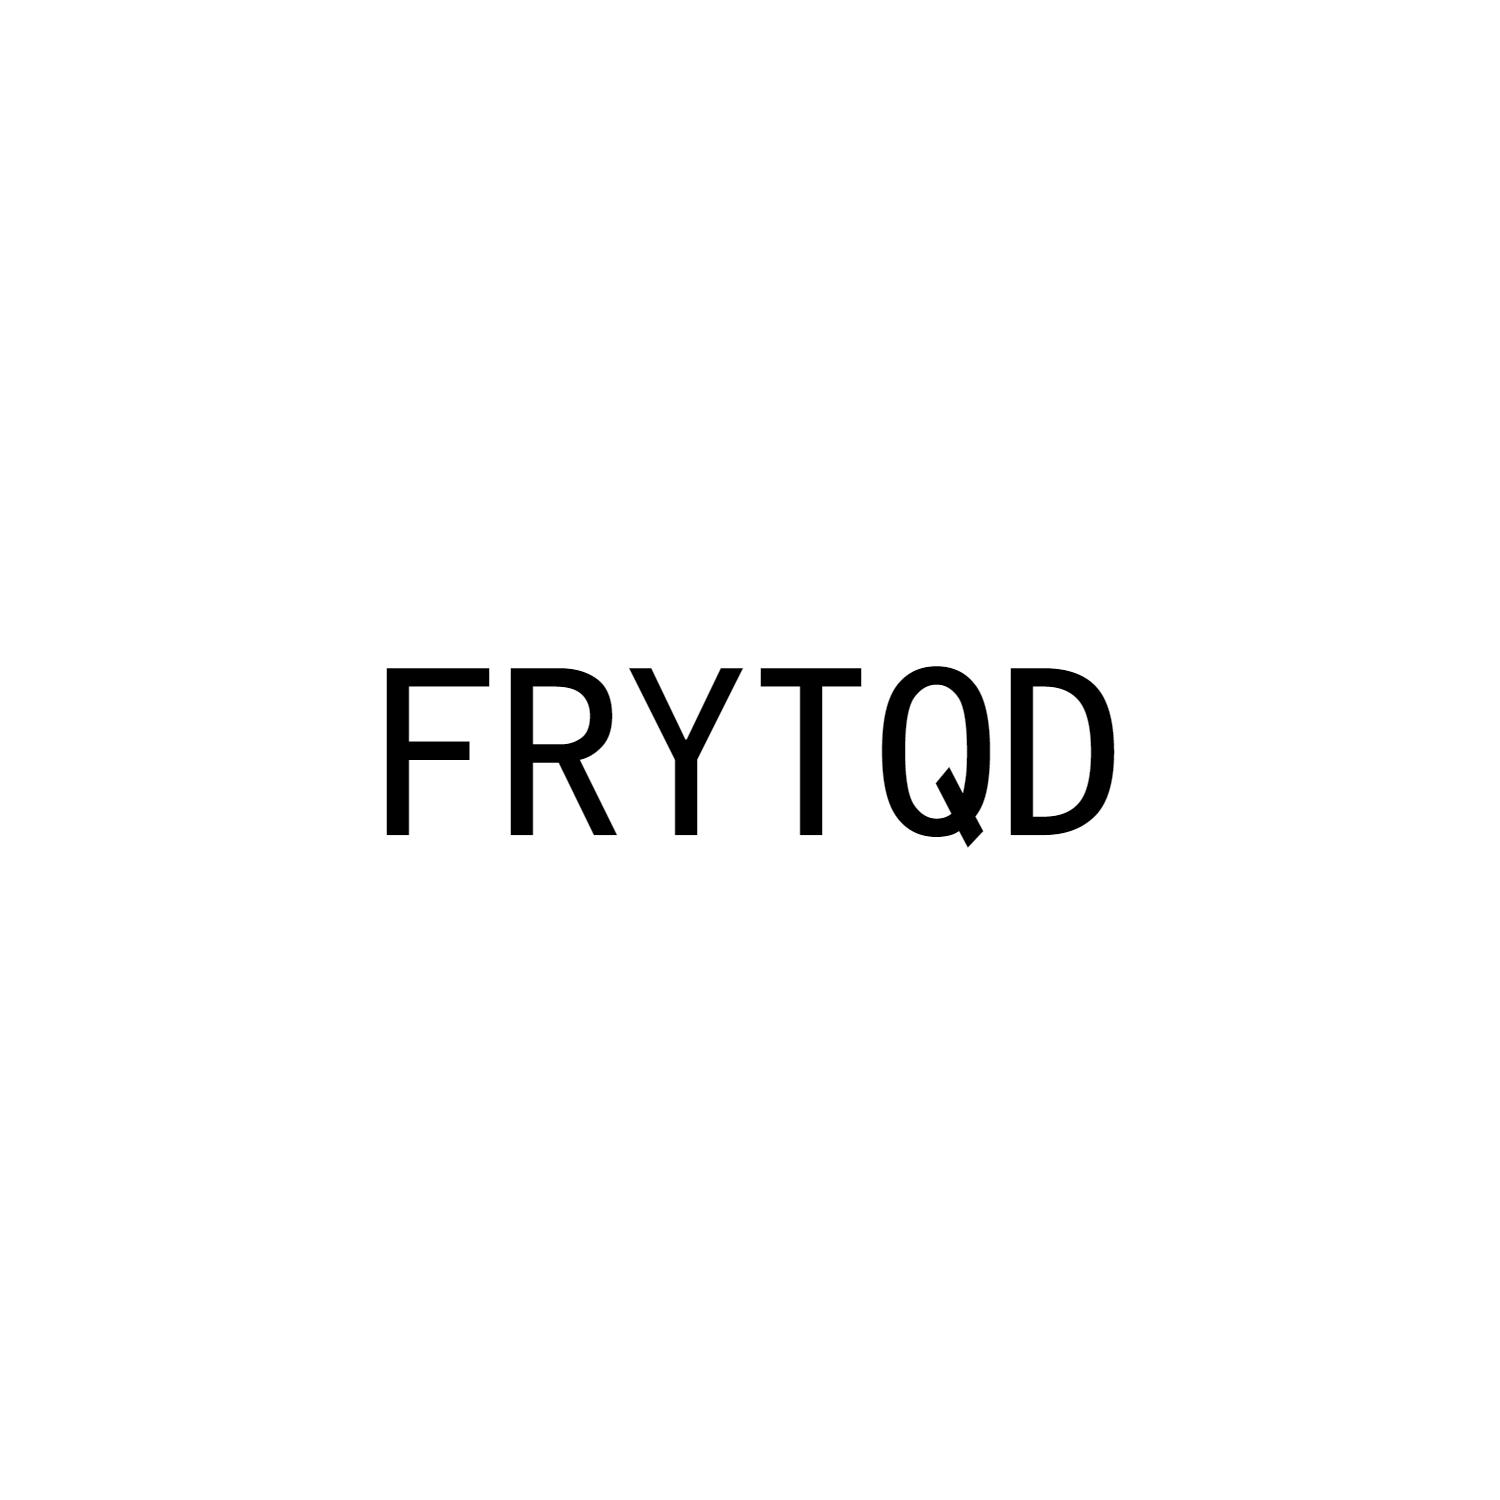 FRYTQD